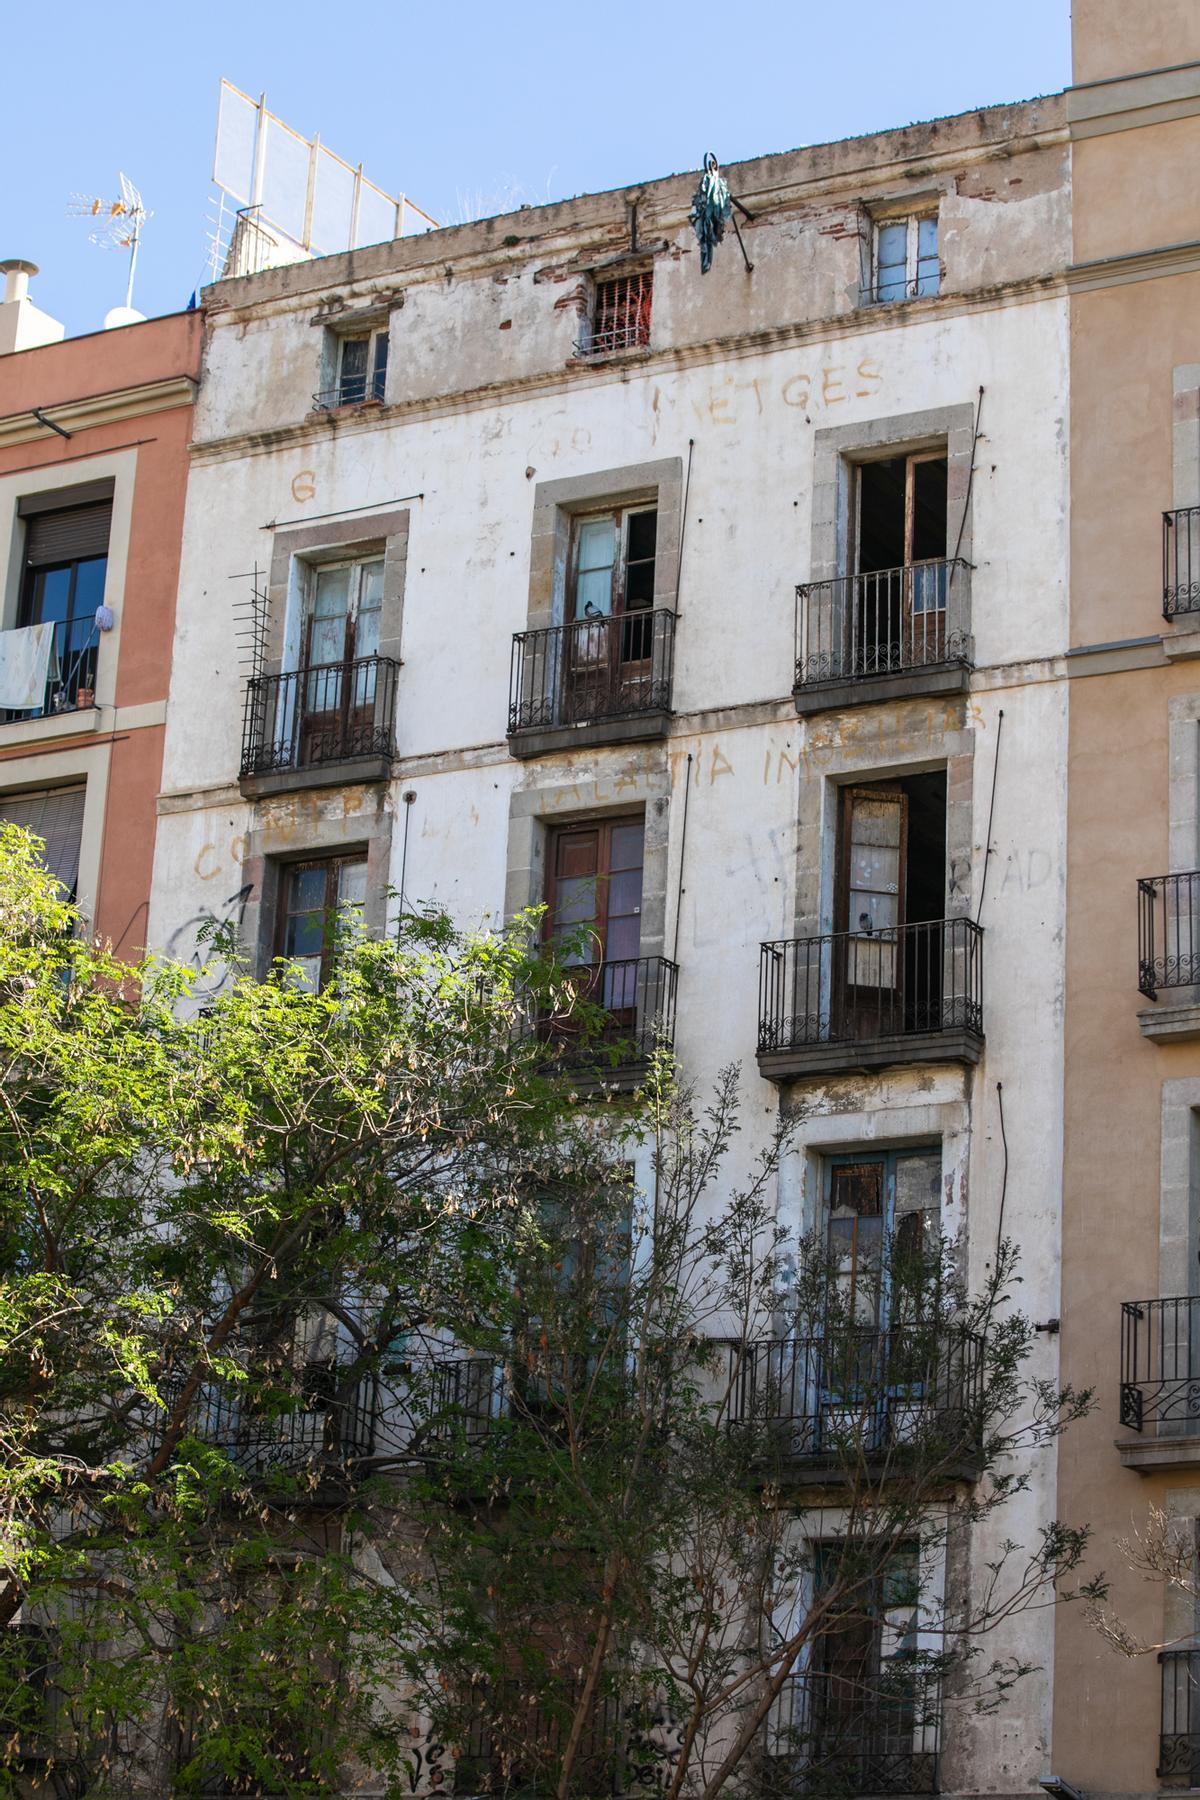 Las palomas toman un bloque abandonado en el casco antiguo de Barcelona